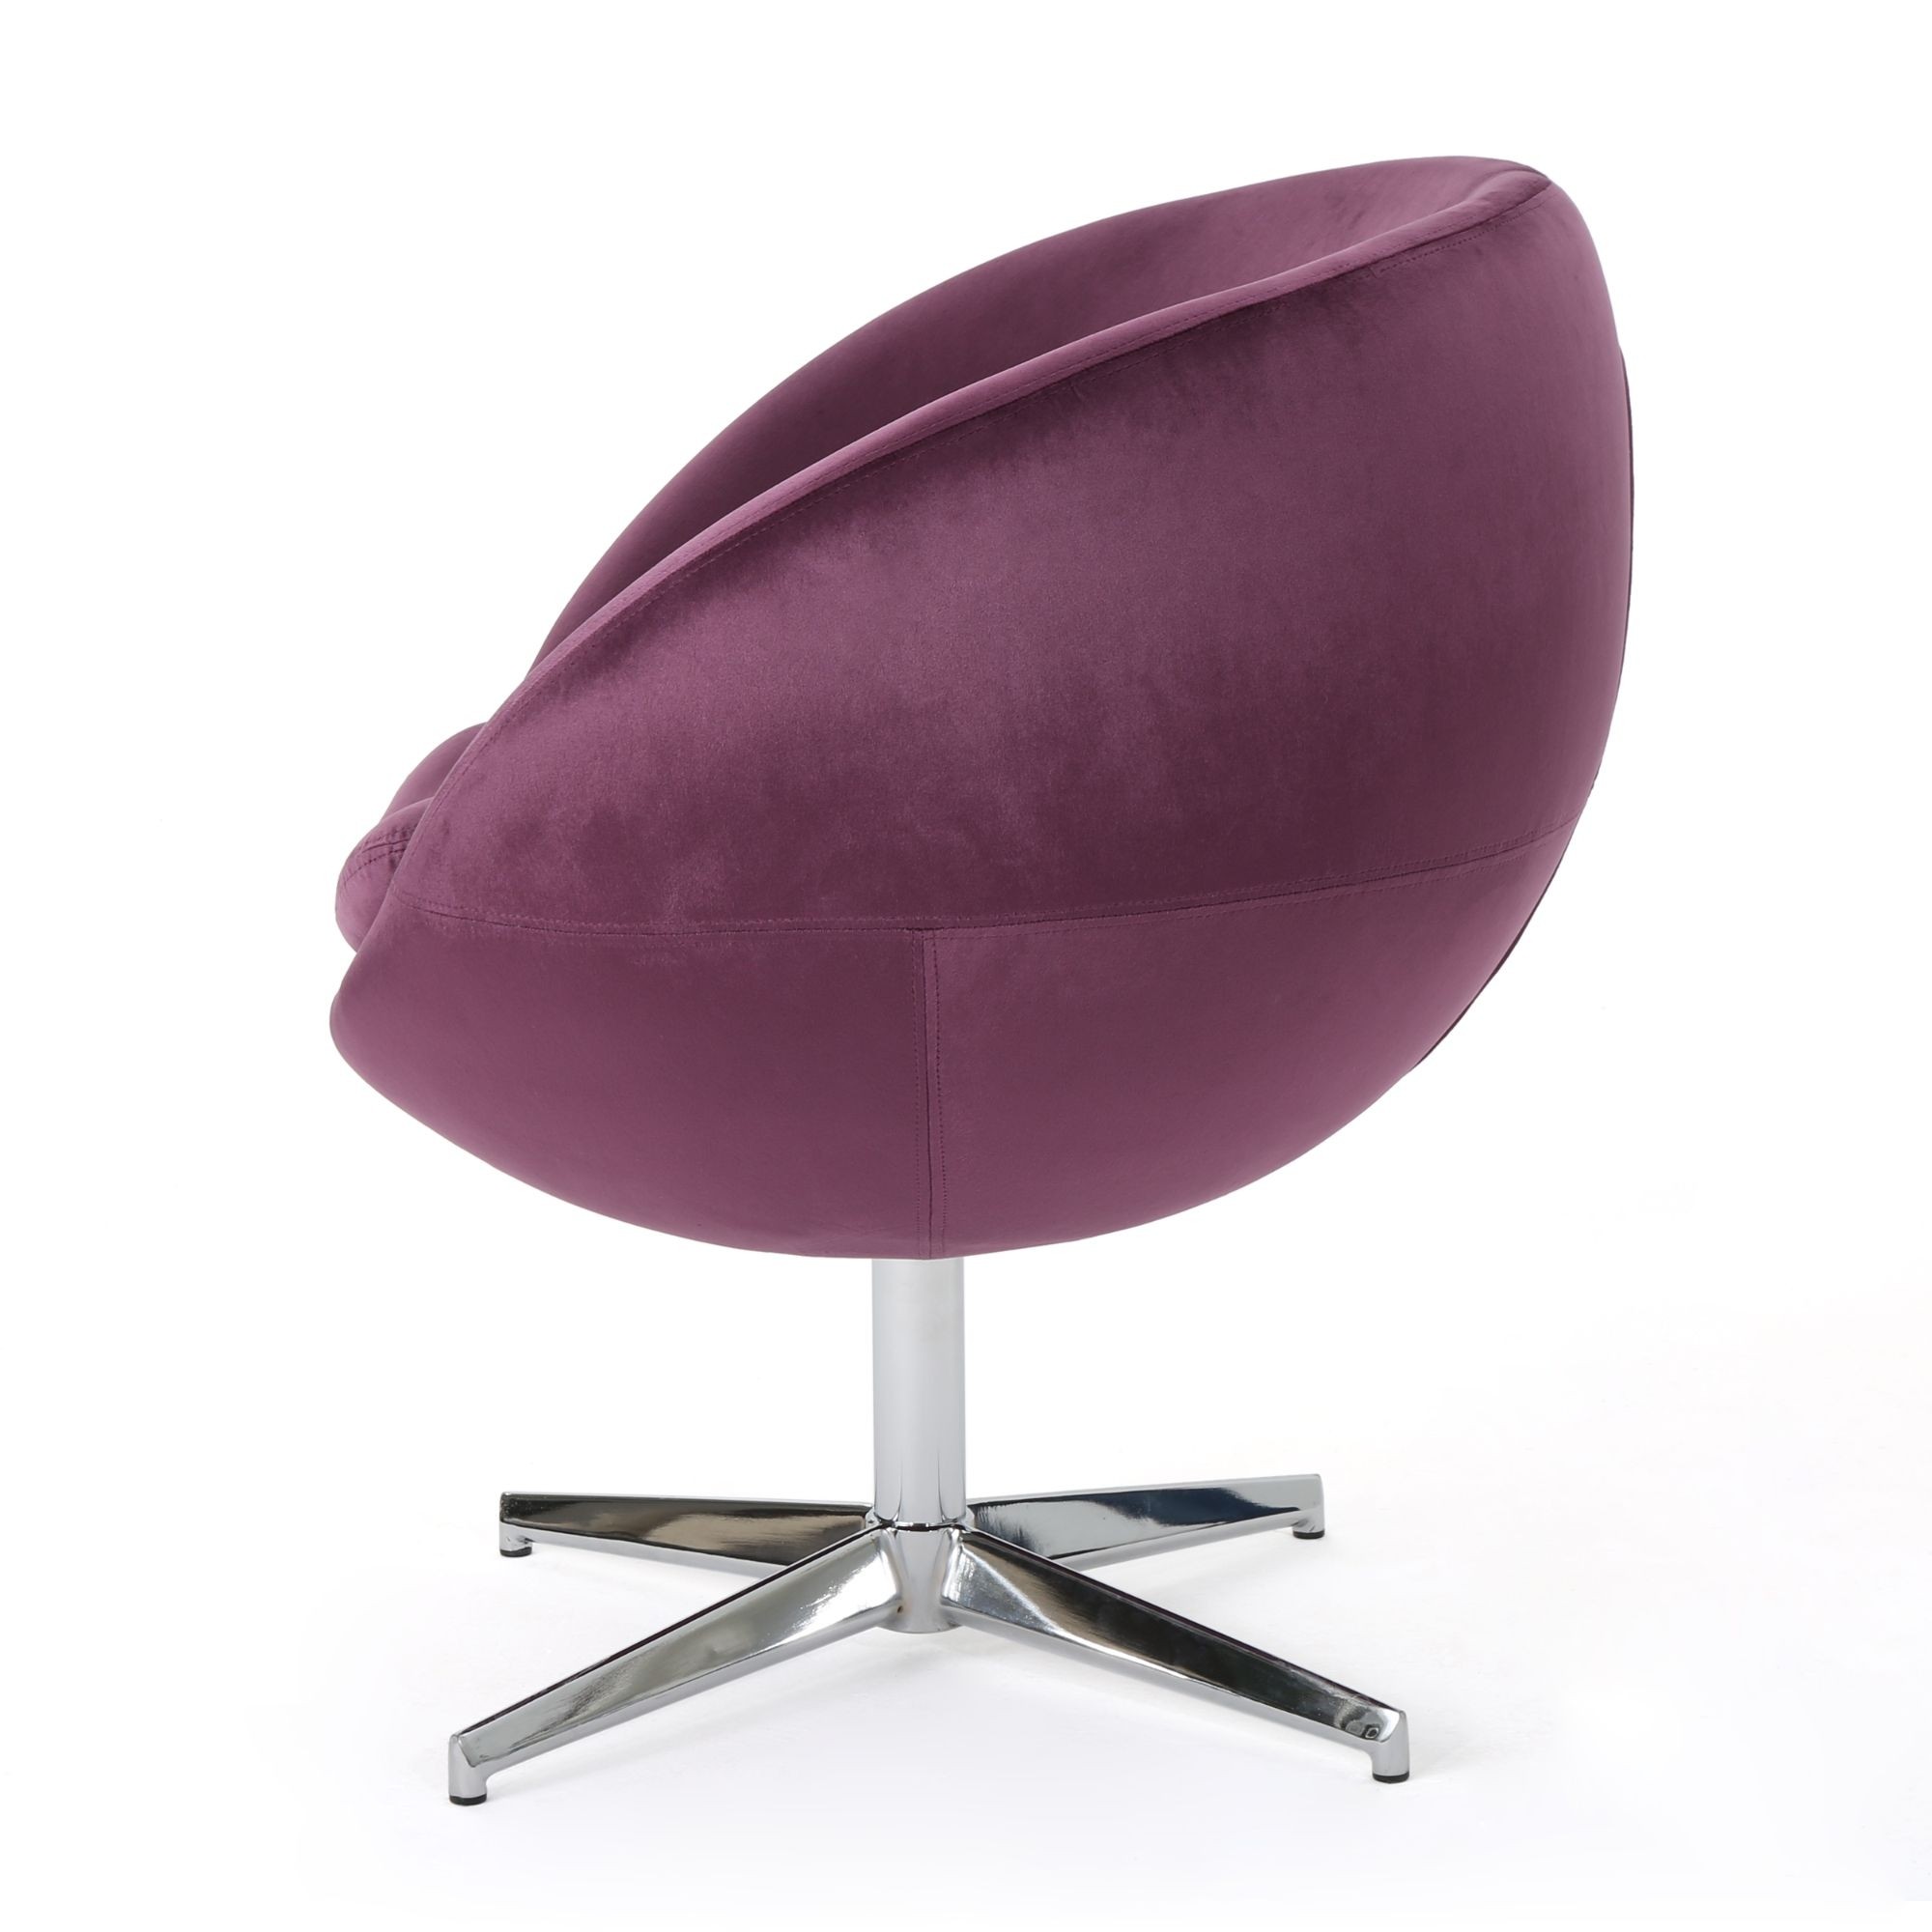 31 75 raisin purple and silver contemporary swivel chair